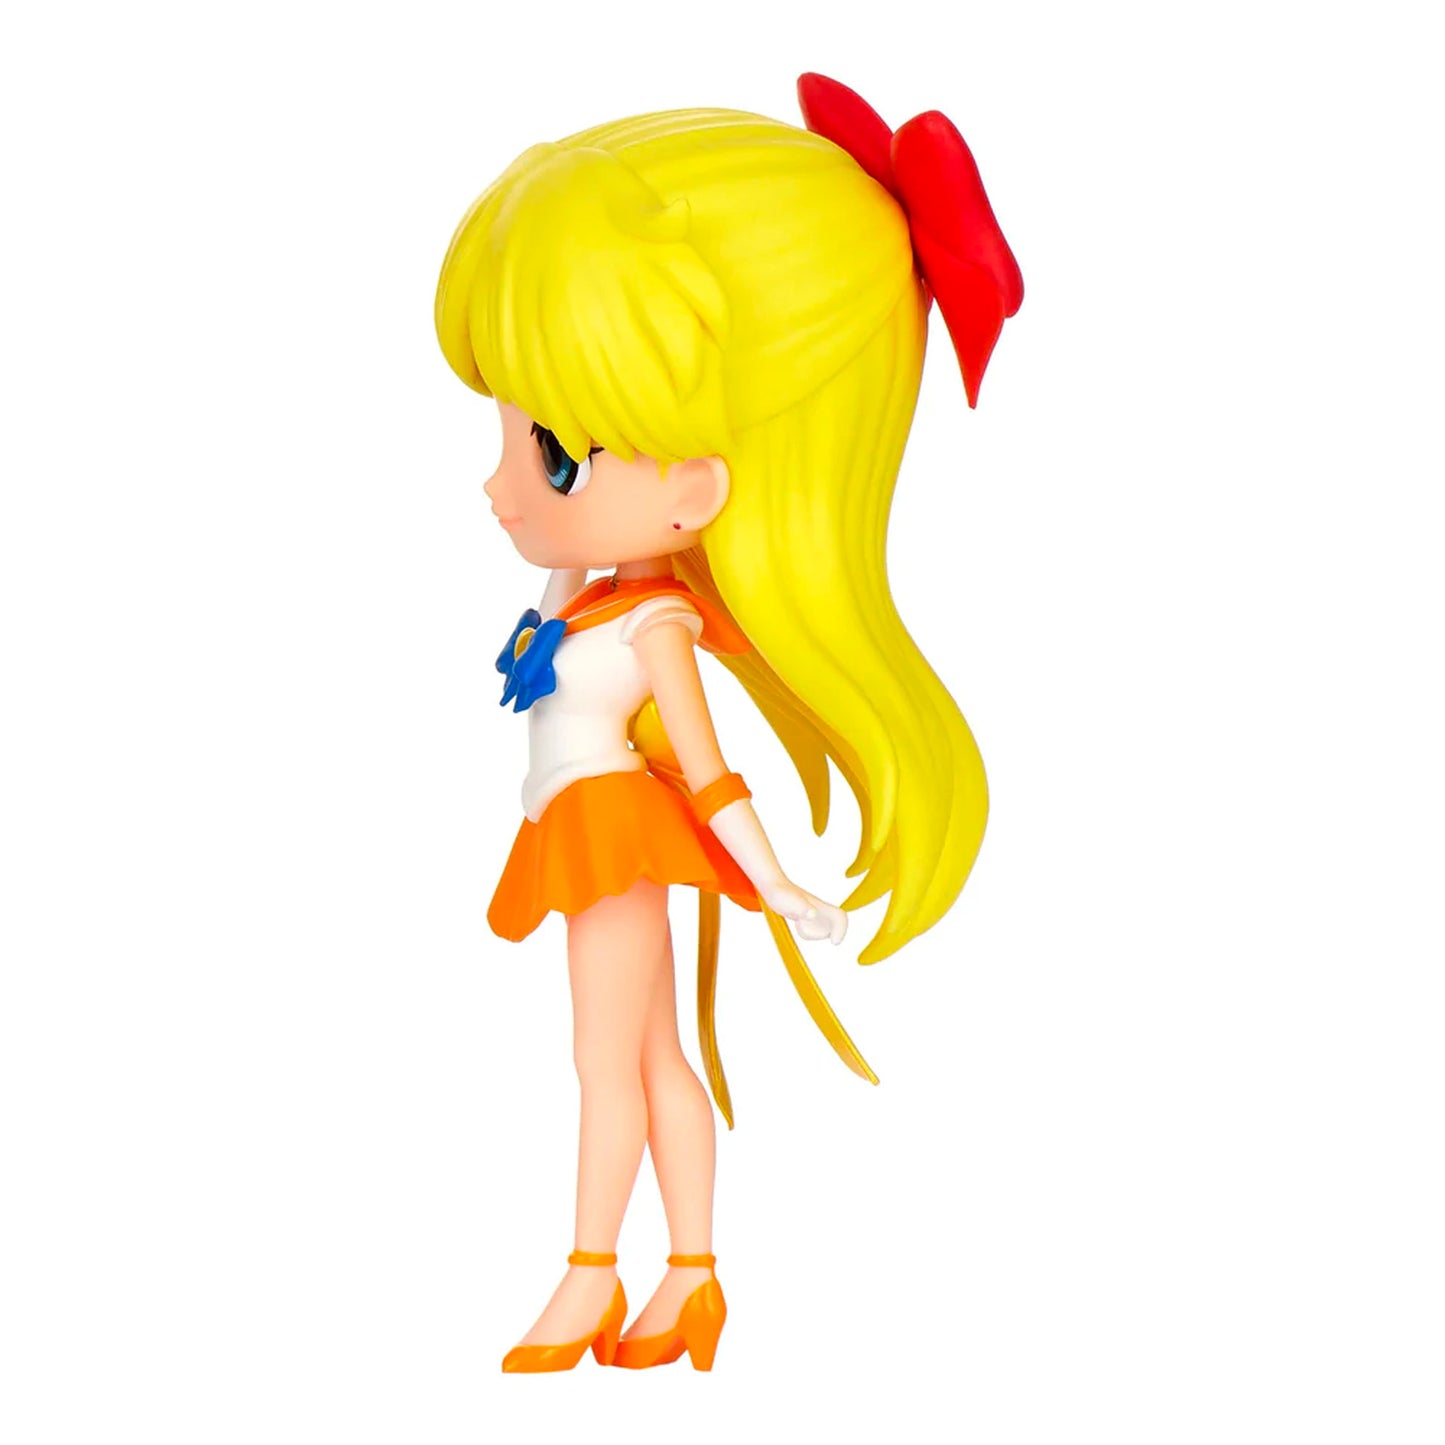 Banpresto x Bandai x Q Posket: Sailor Moon Eternal - Super Sailor Venus Ver. A Figure